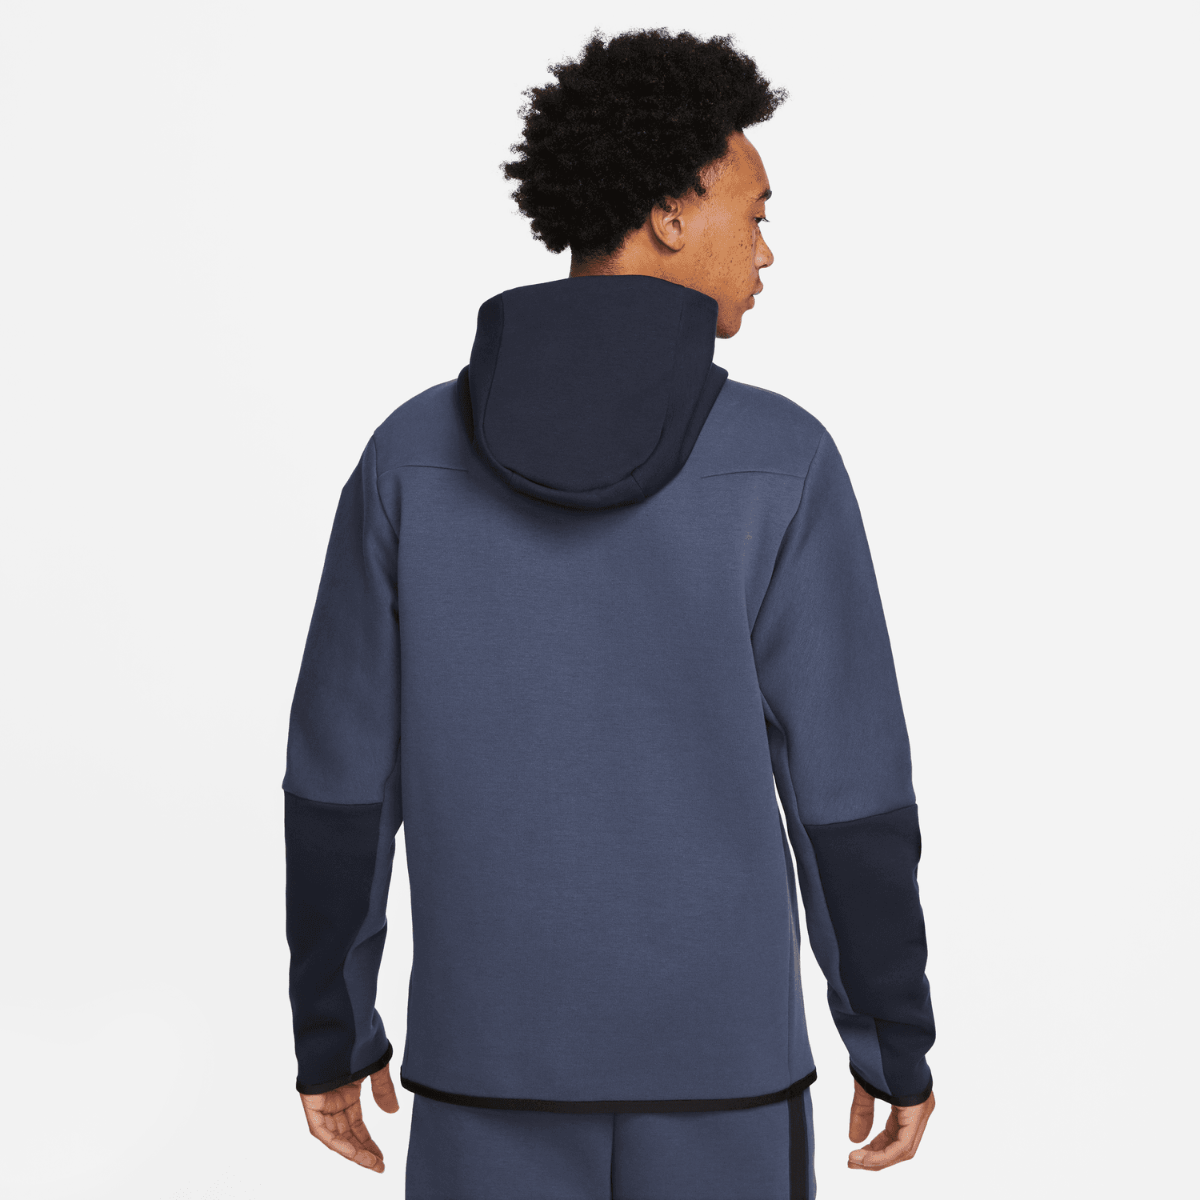 Veste à capuche Nike Tech Fleece - Bleu/Noir